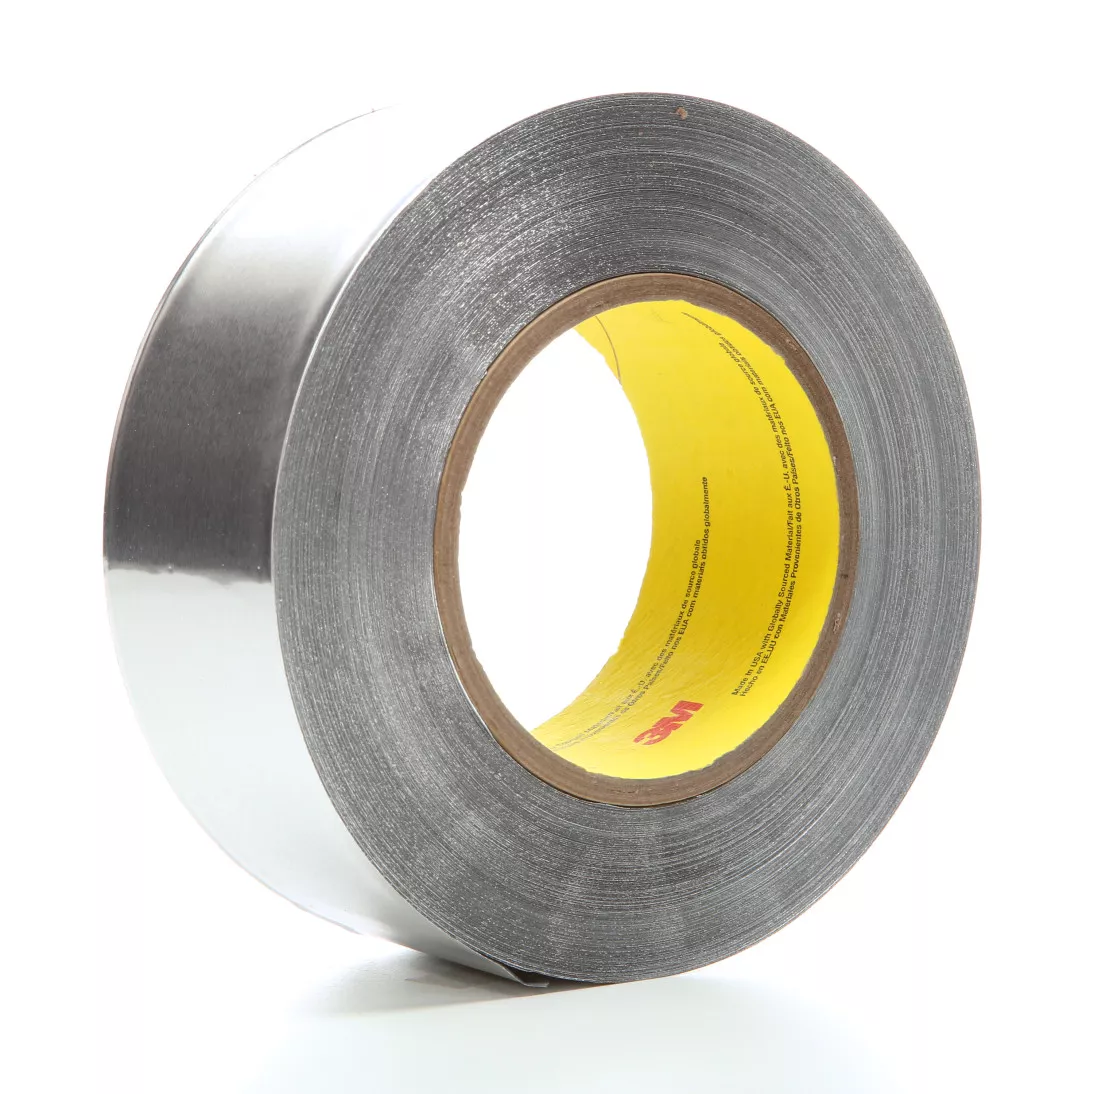 3M™ Heavy Duty Aluminum Foil Tape 438, Silver, 4 in x 60 yd, 7.2 mil, 2
rolls per case